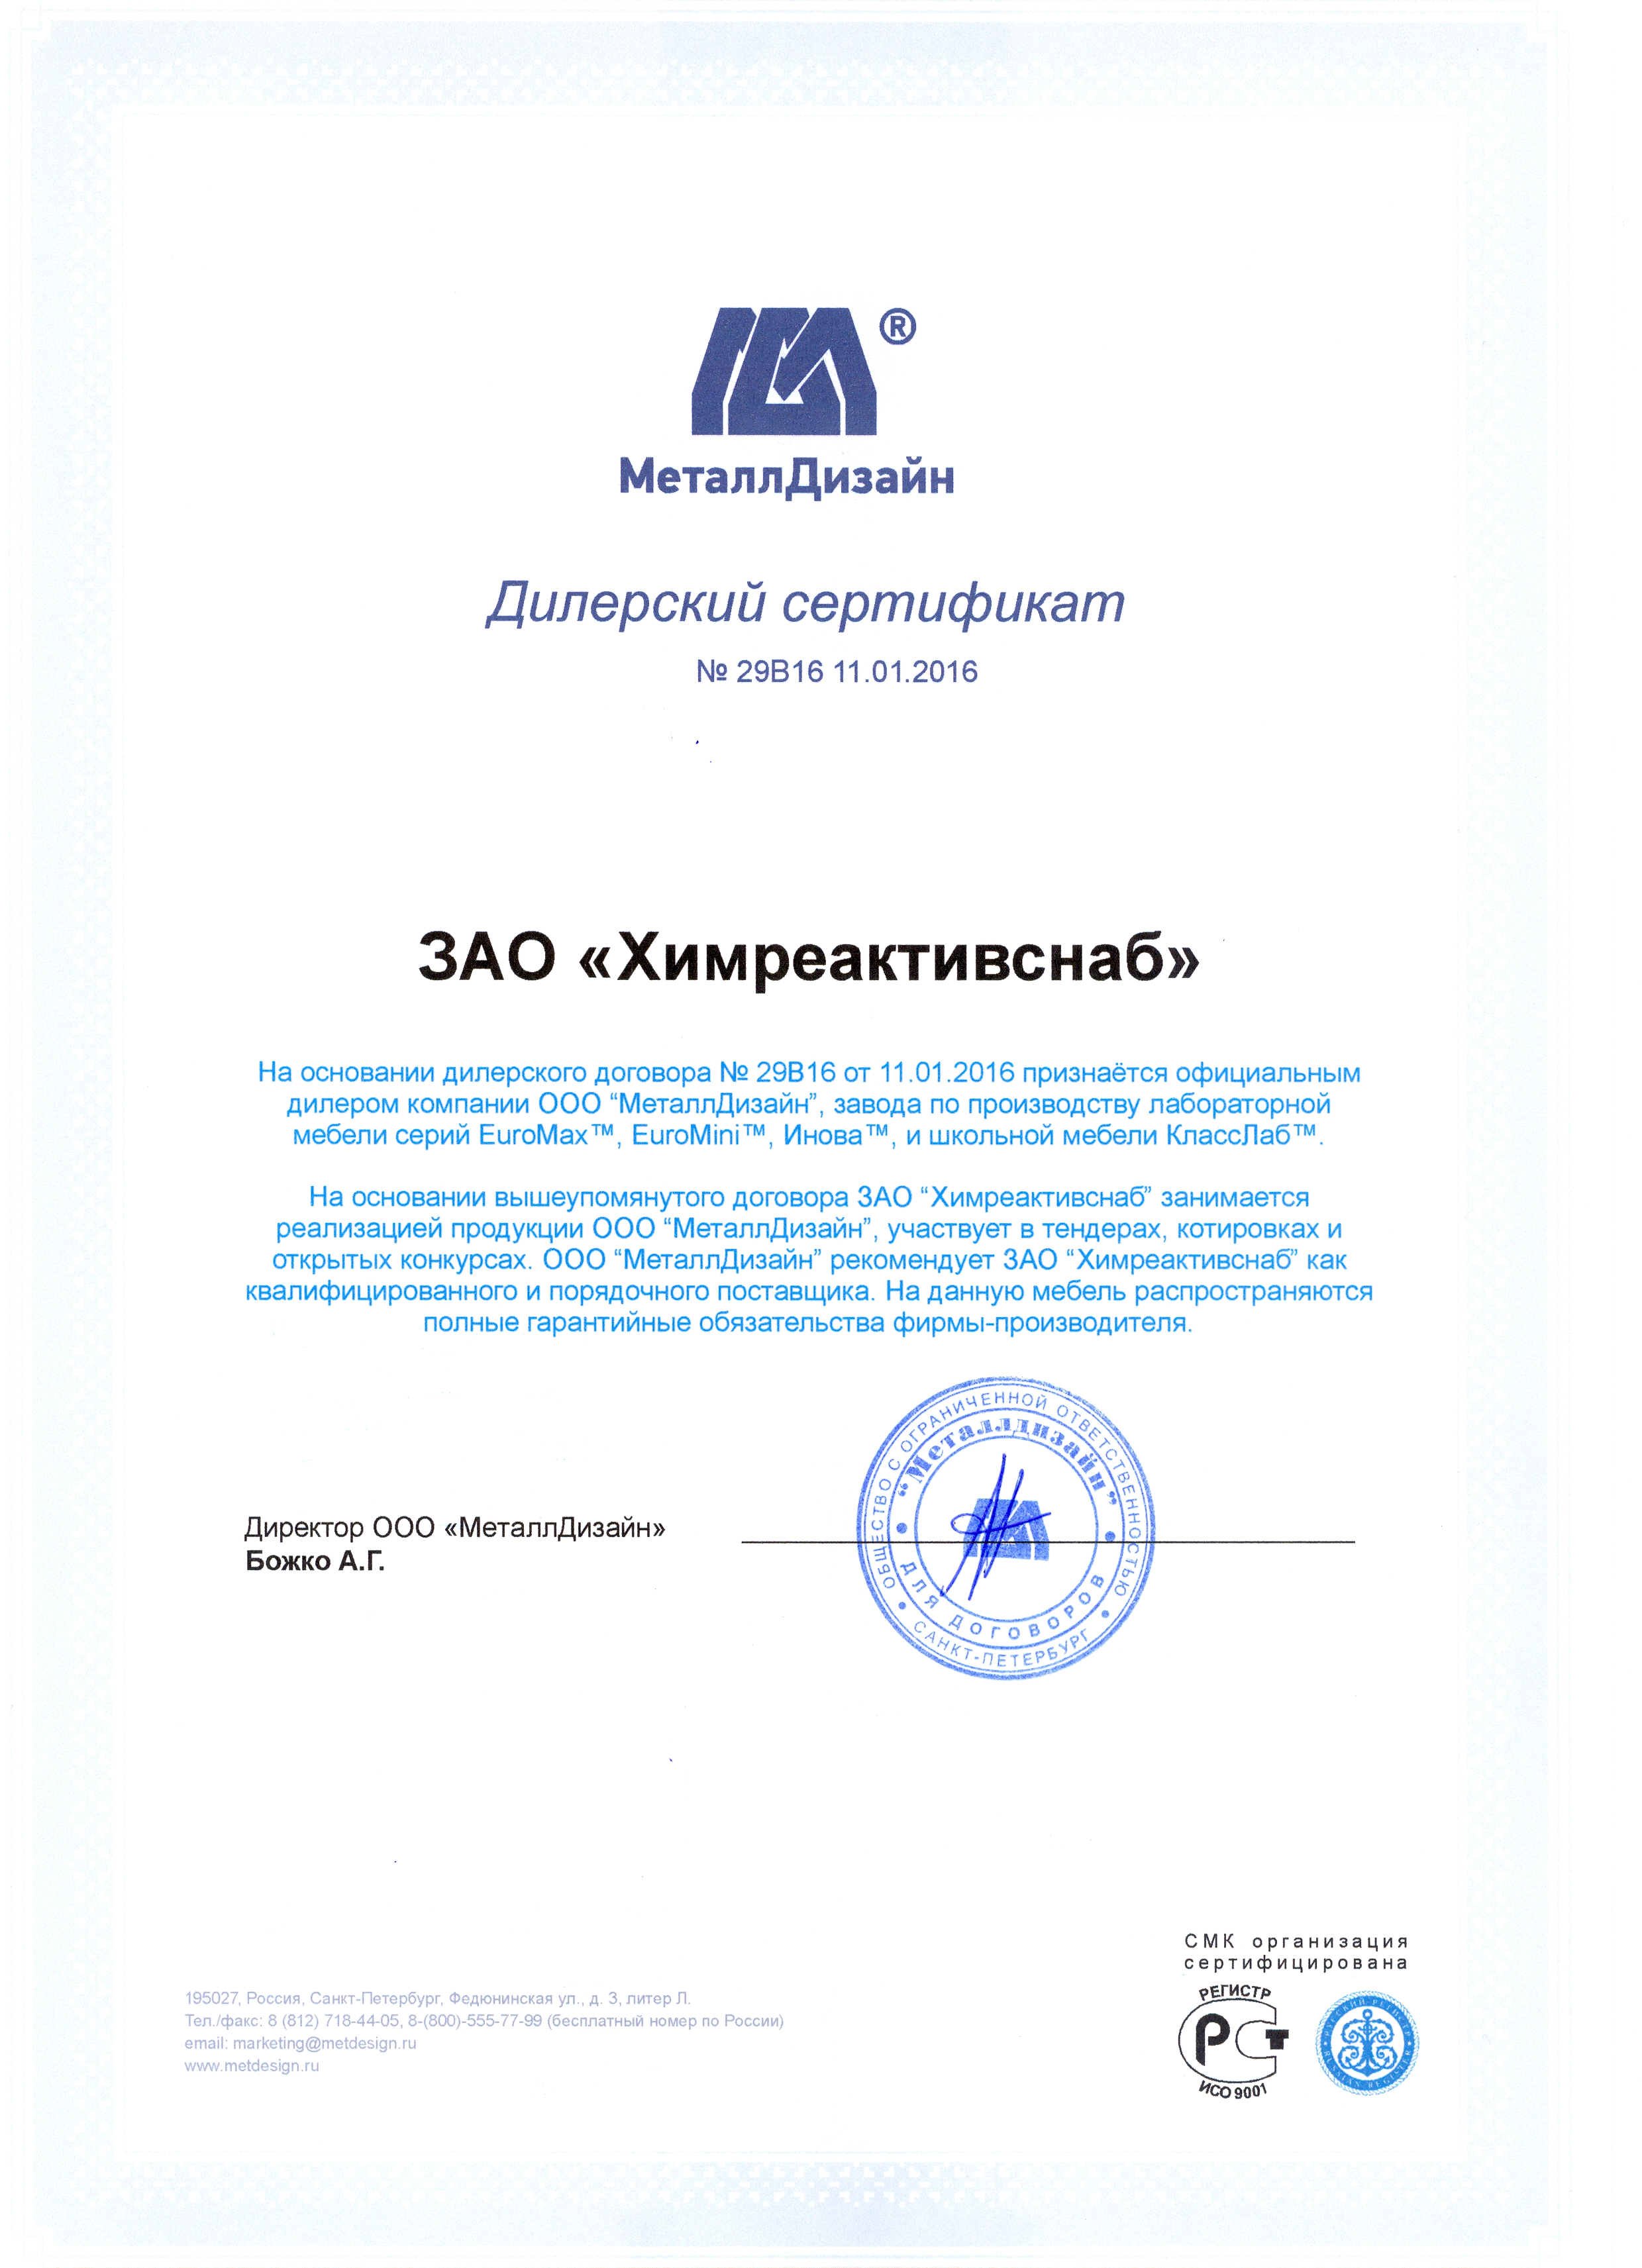 "МеталлДизайн" ООО, сертификат официального дилера